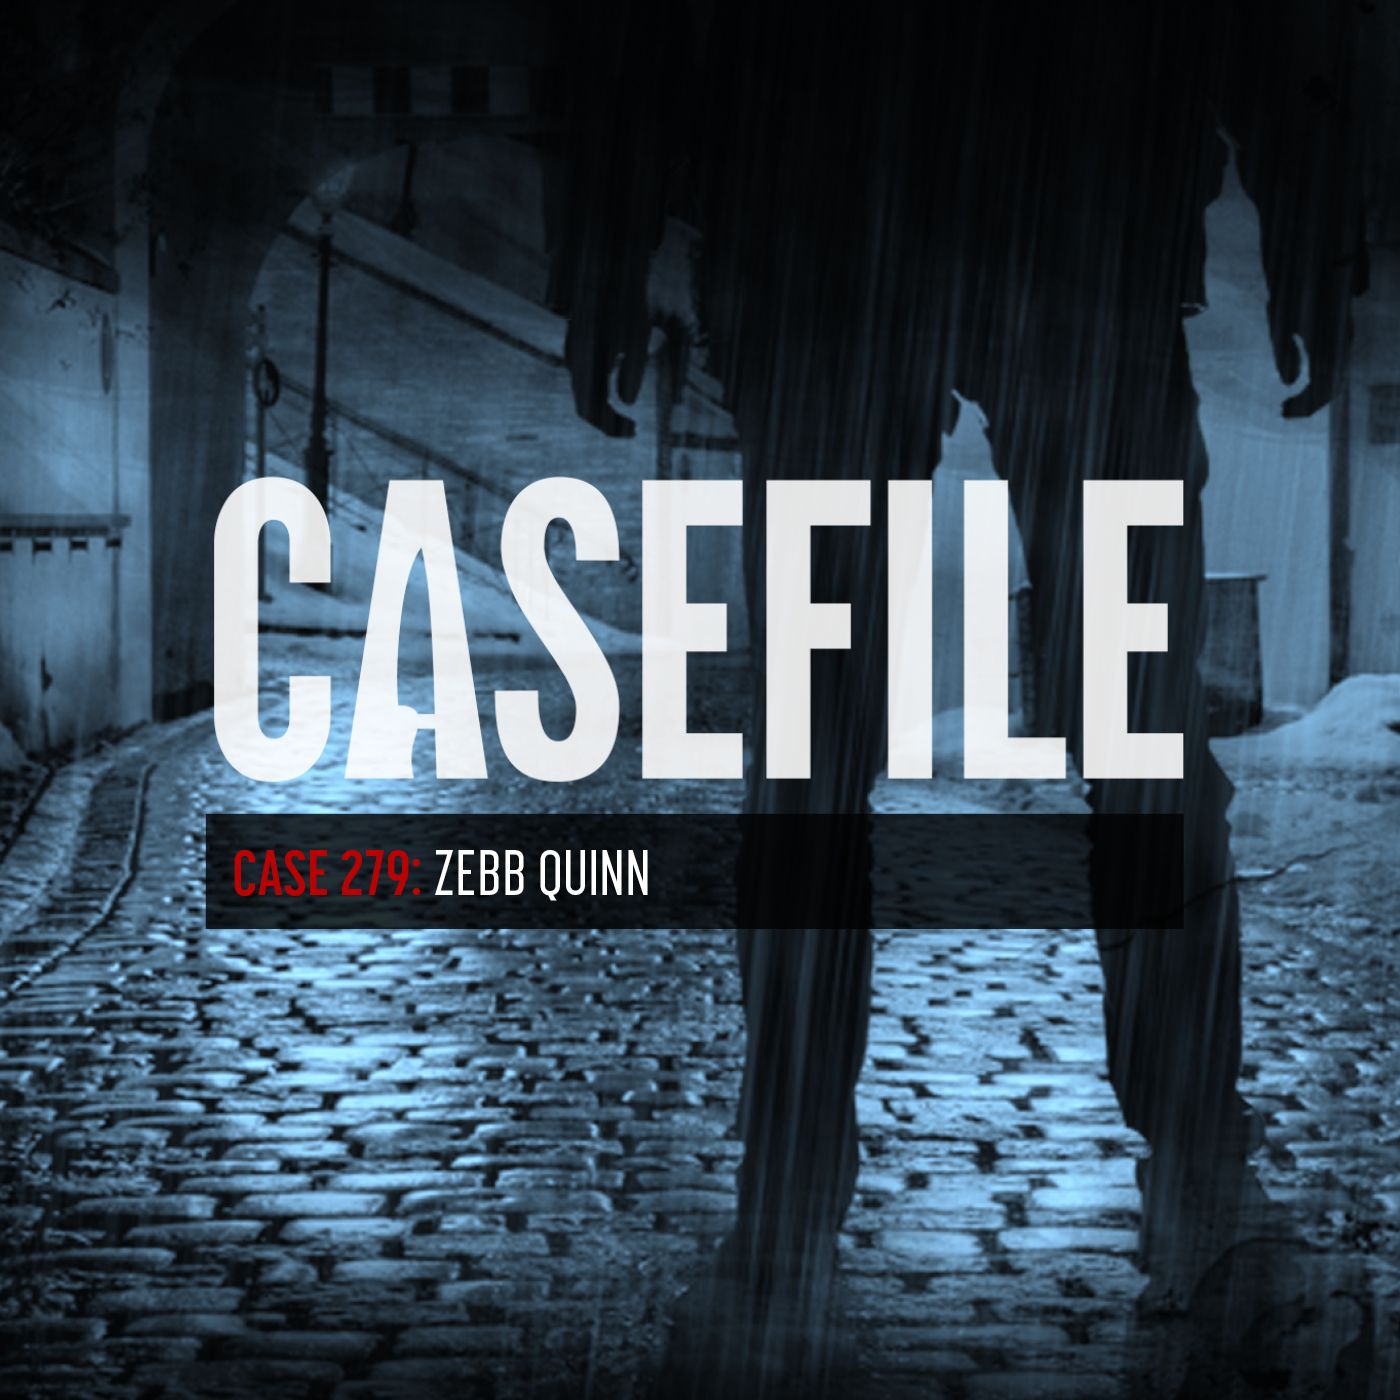 Case 279: Zebb Quinn